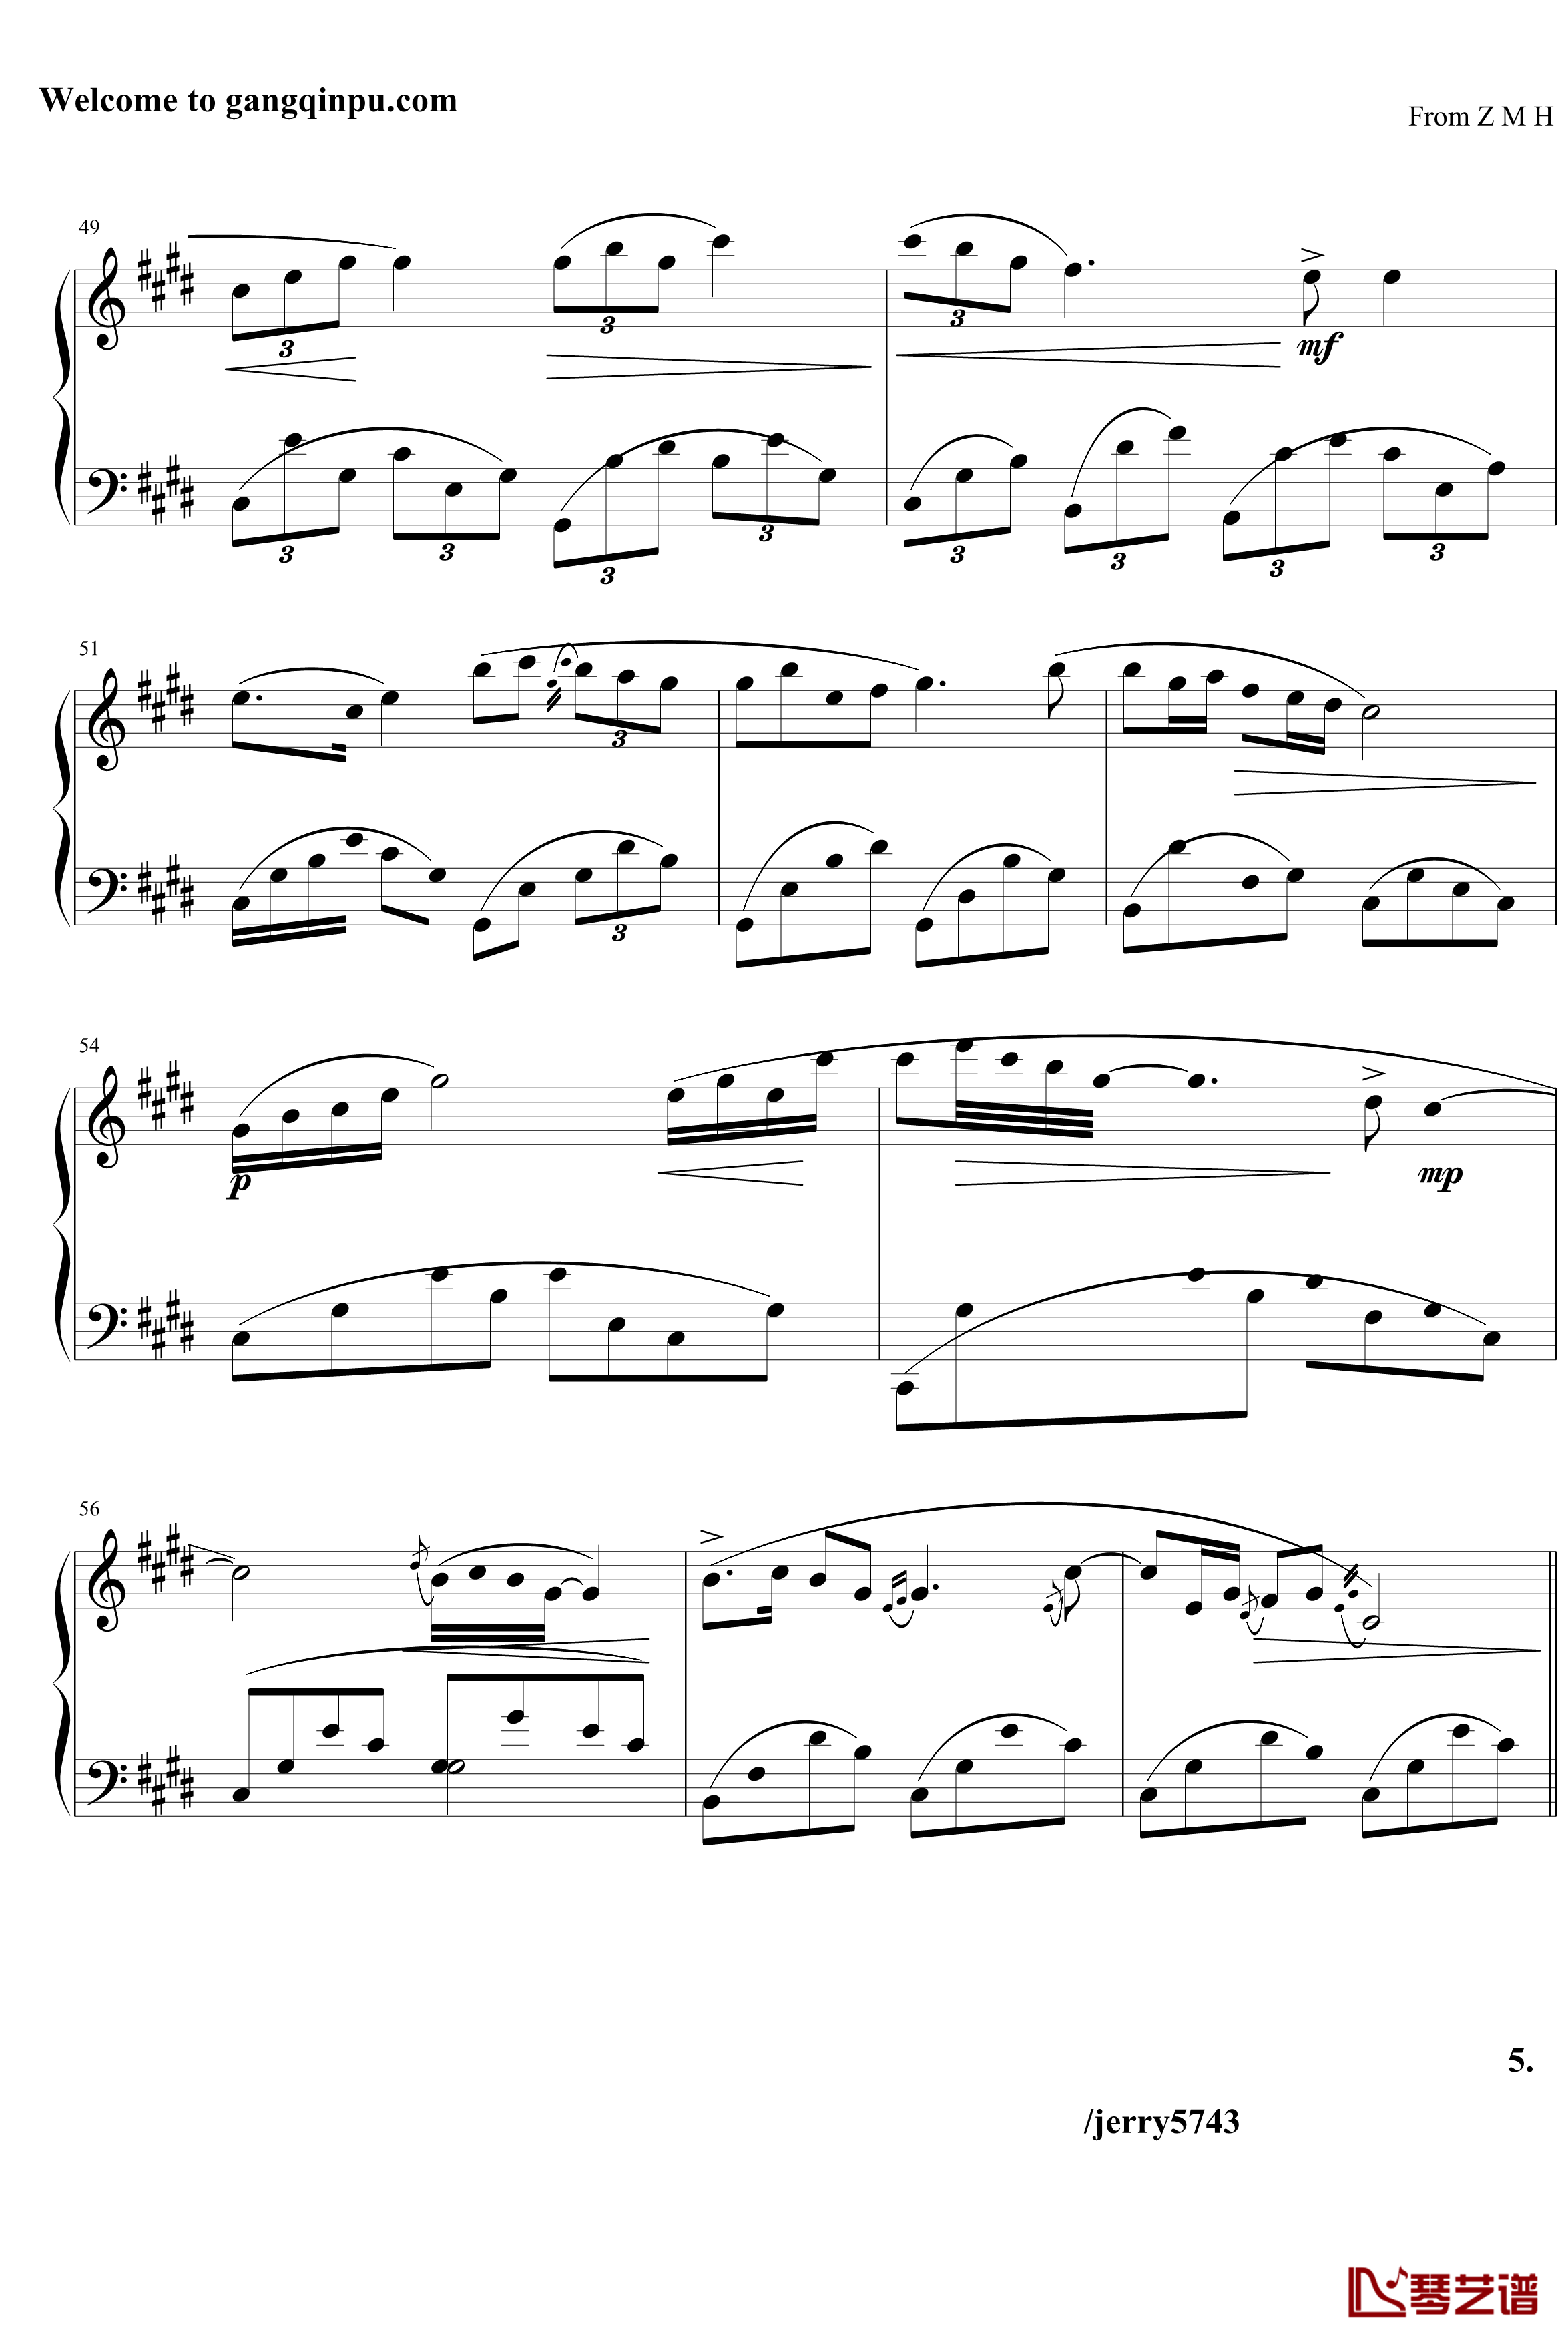 夜曲Op7.6钢琴谱-中西式-jerry57435